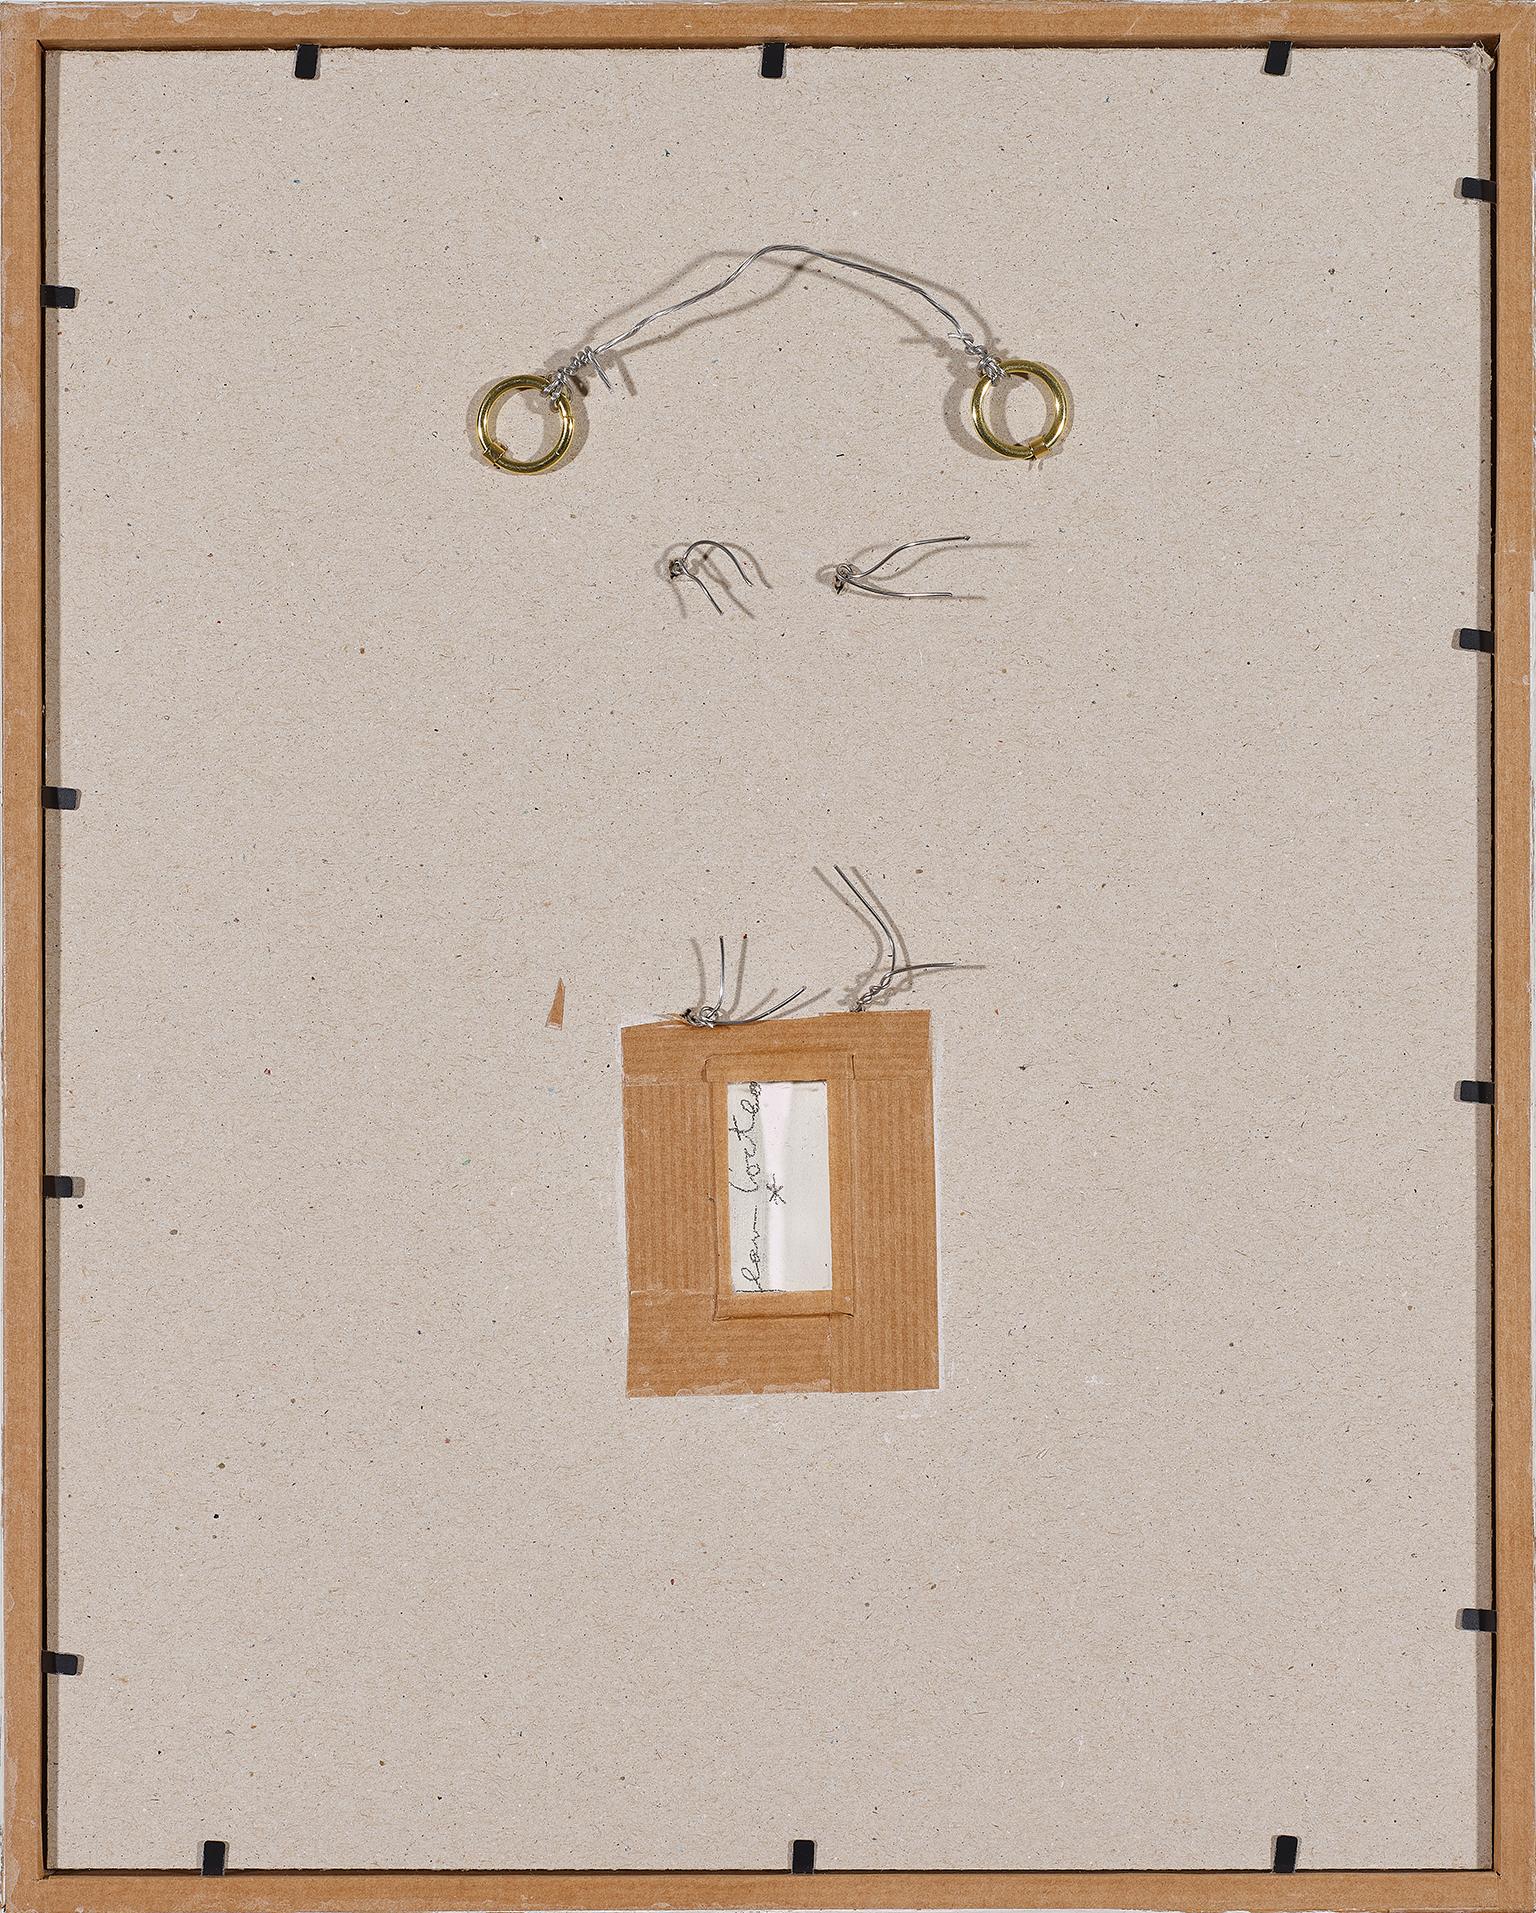 Jean Cocteau (1889 -1963 )

Vé und Astrologie  Keramik-Anhänger :

Vé : unterzeichnet unter White 1ere  Variante 
( Terre blanche en relief ). Seite 212 
Größe: 7 x5,5 cm 
Werkverzeichnis Annie Guédras .RB 3.

Astrologie : unterzeichnet unter White